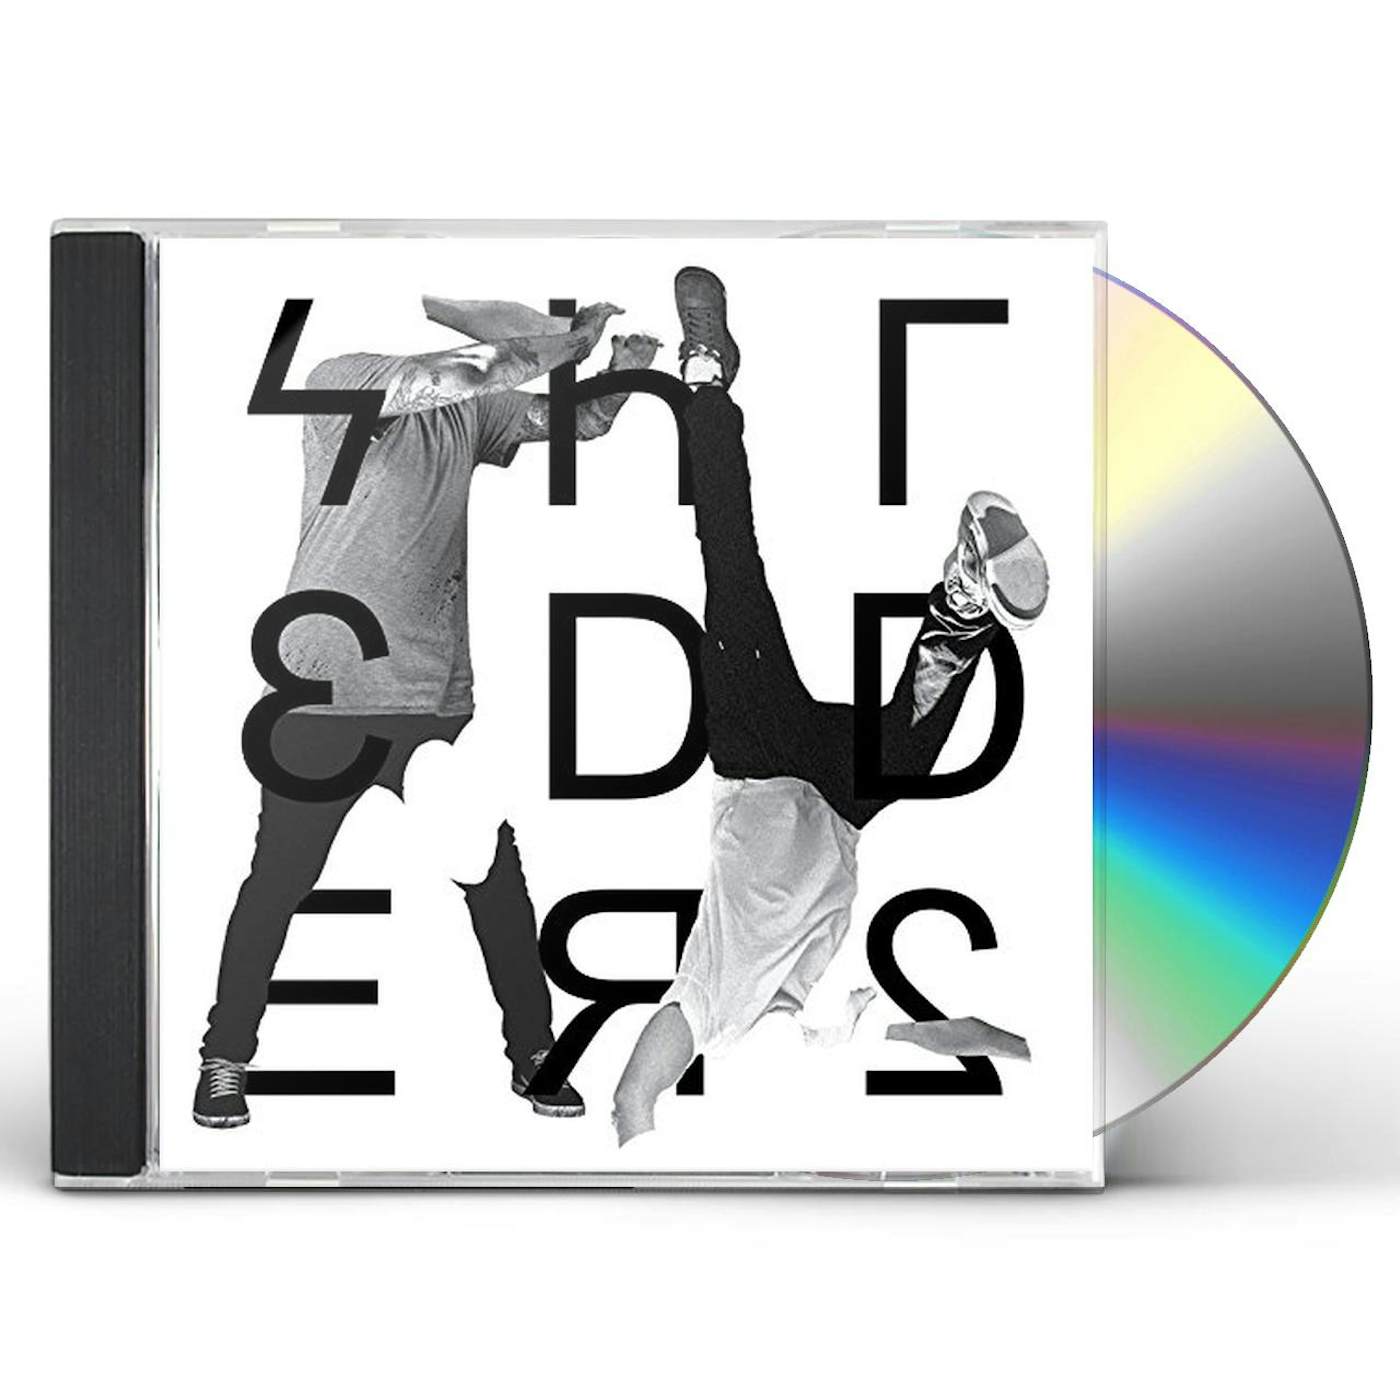 Shredders DANGEROUS JUMPS CD